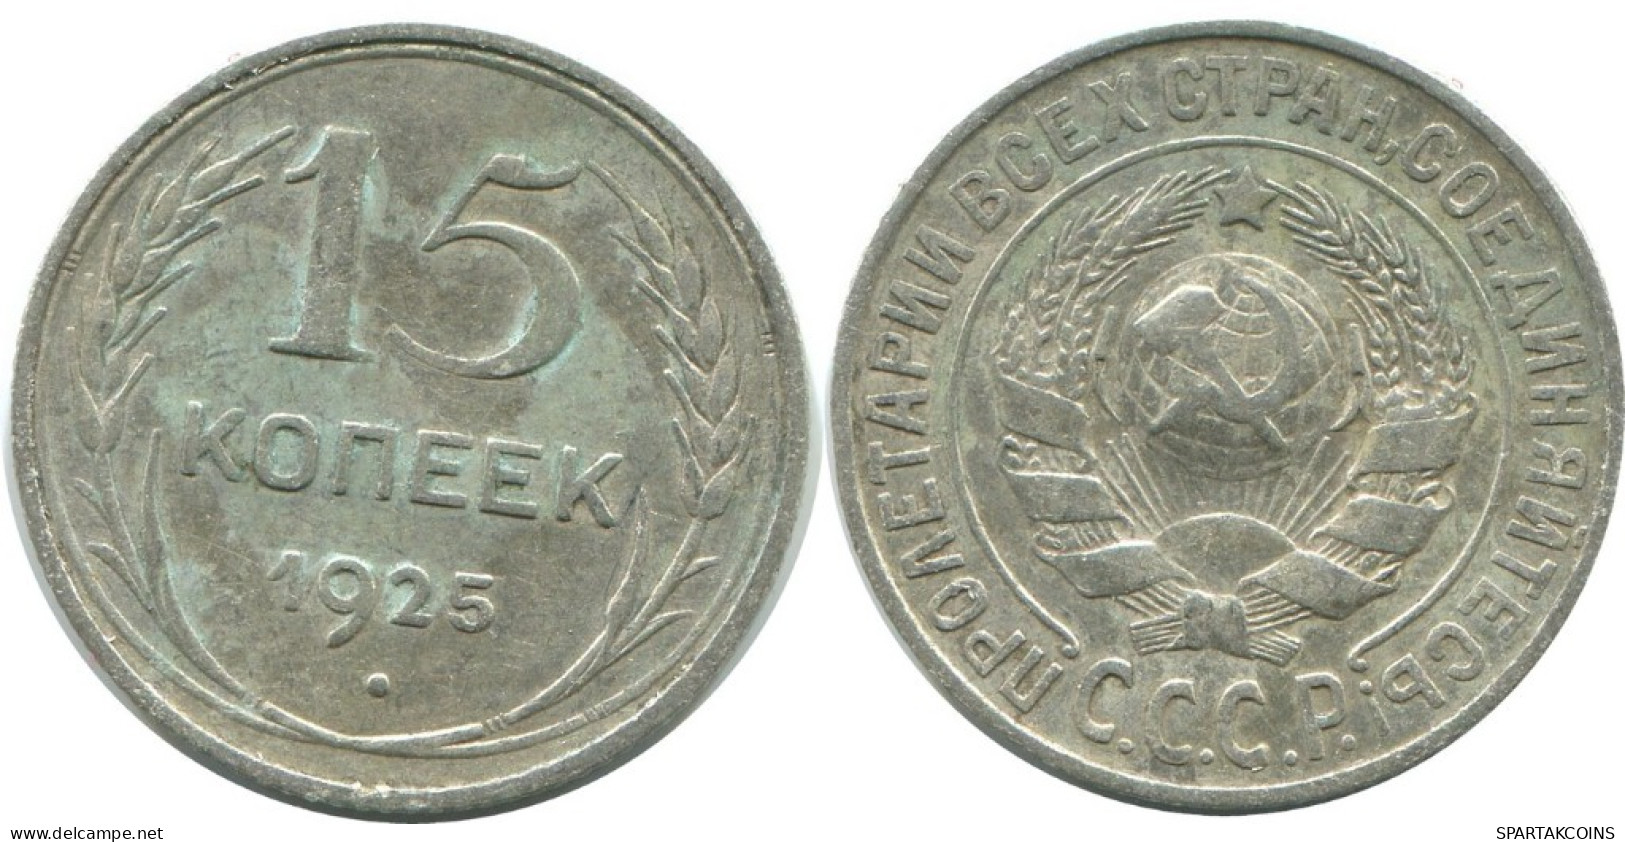 15 KOPEKS 1925 RUSSLAND RUSSIA USSR SILBER Münze HIGH GRADE #AF259.4.D.A - Russland